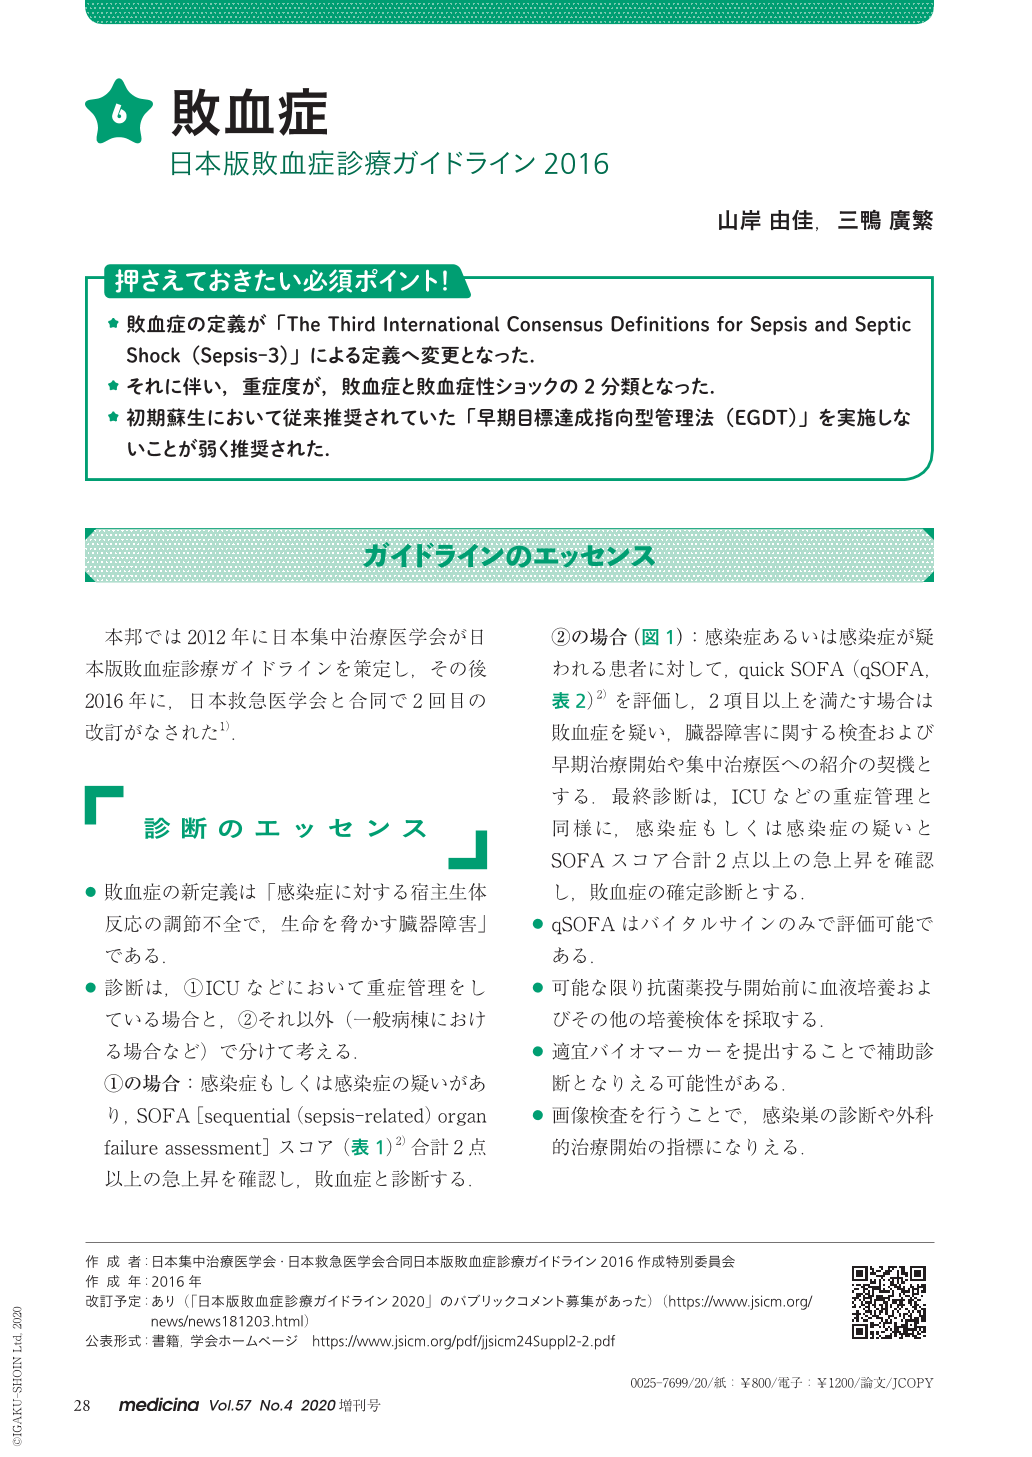 6 敗血症 日本版敗血症診療ガイドライン16 Medicina 57巻4号 医書 Jp